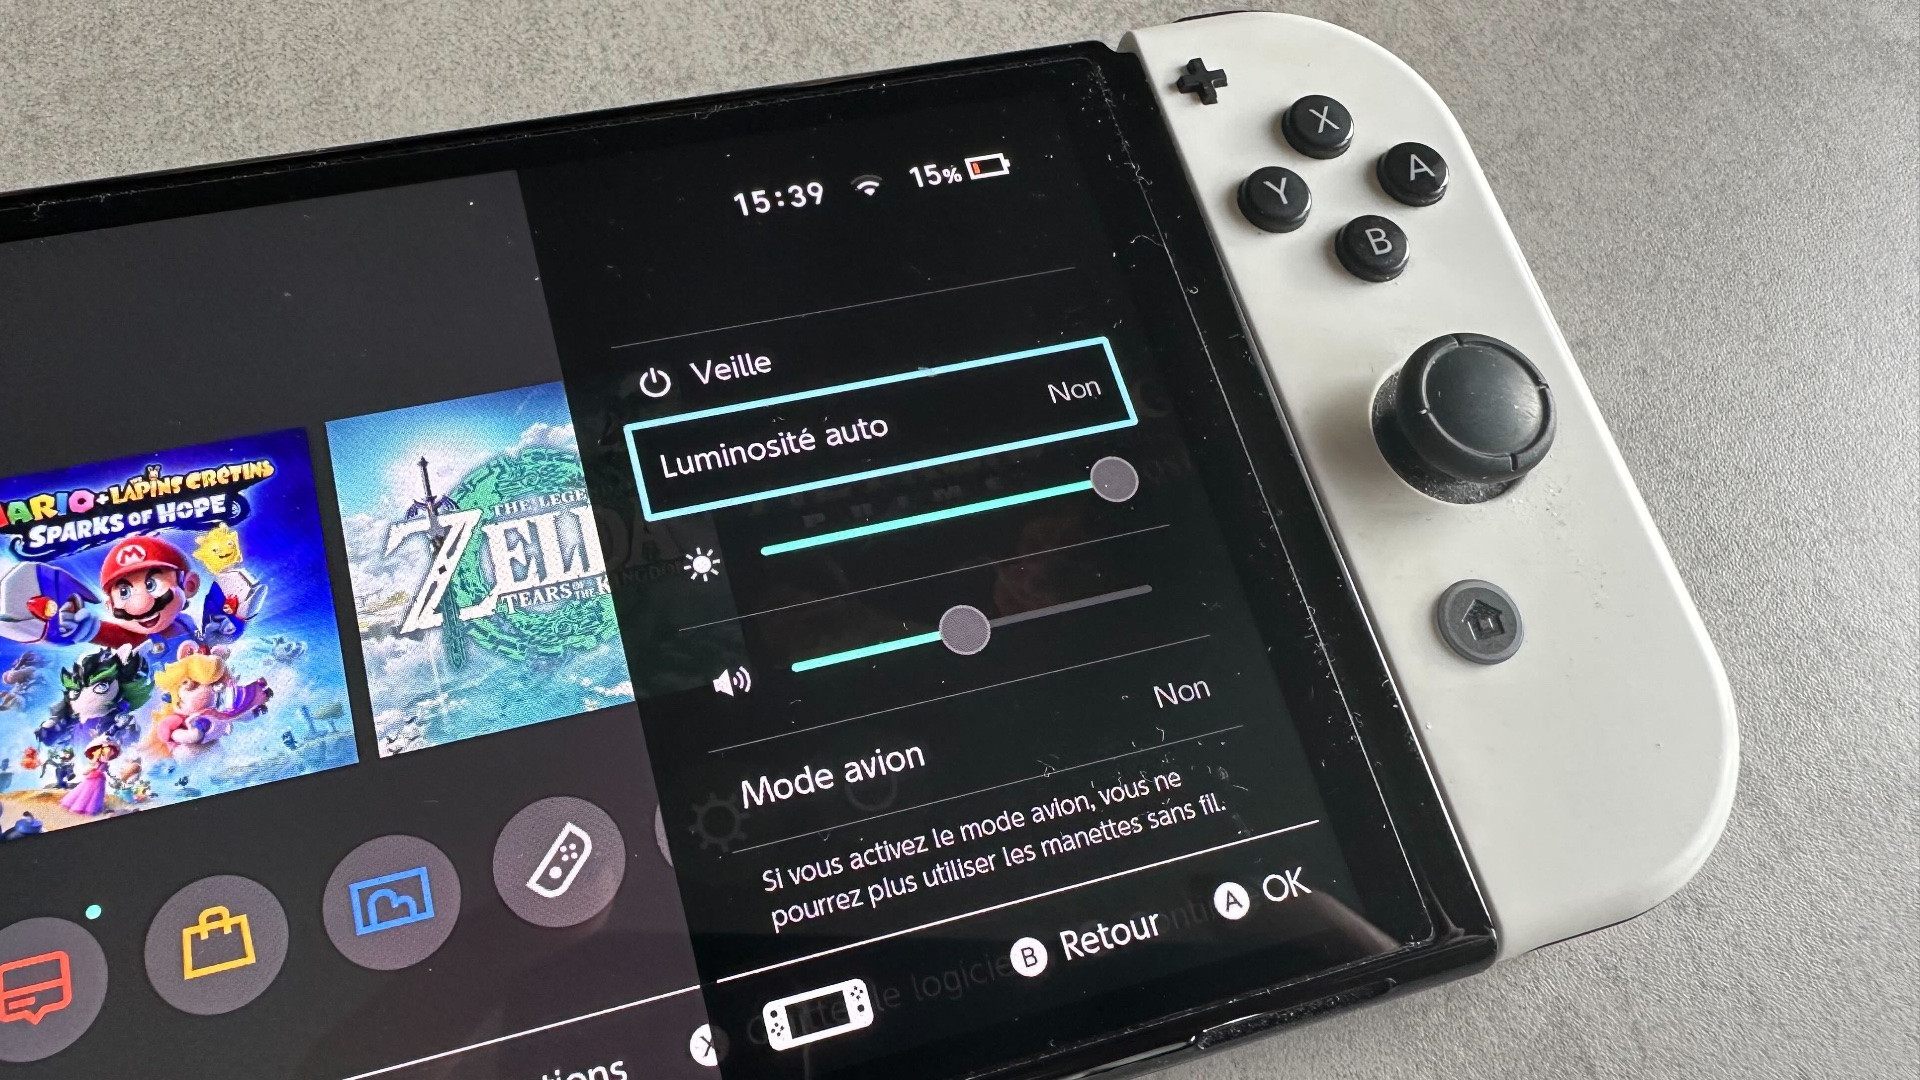 Comment connecter deux Nintendo Switch pour un jeu local sans fil